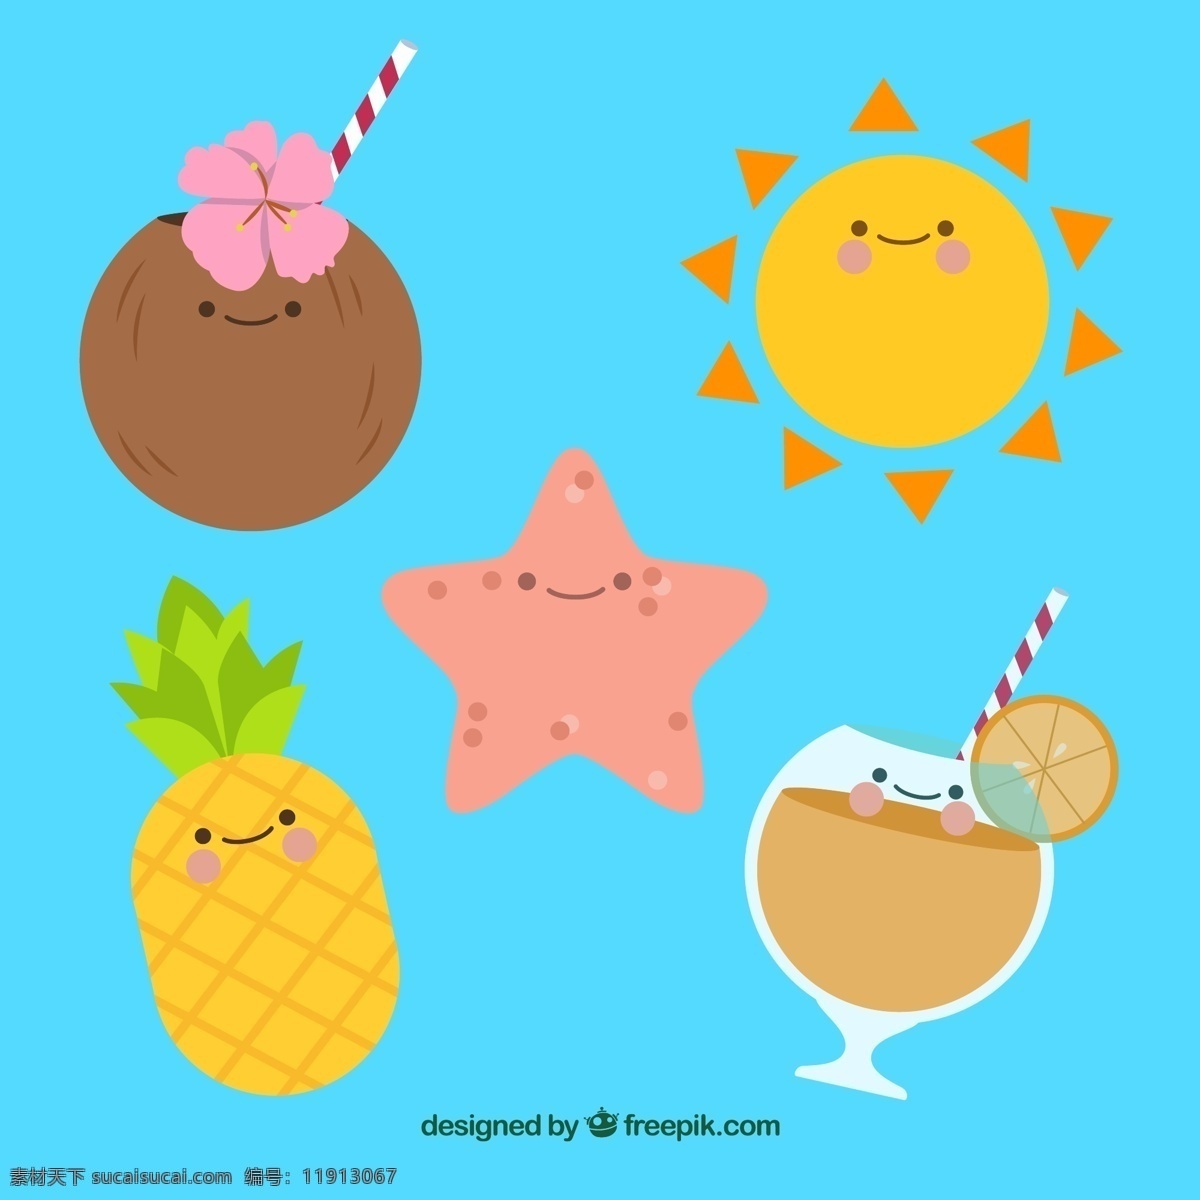 款 可爱 表情 夏季 元素 矢量 椰子 椰子汁 太阳 海星 凤梨 扶桑花 鸡尾酒 饮料 标志图标 其他图标